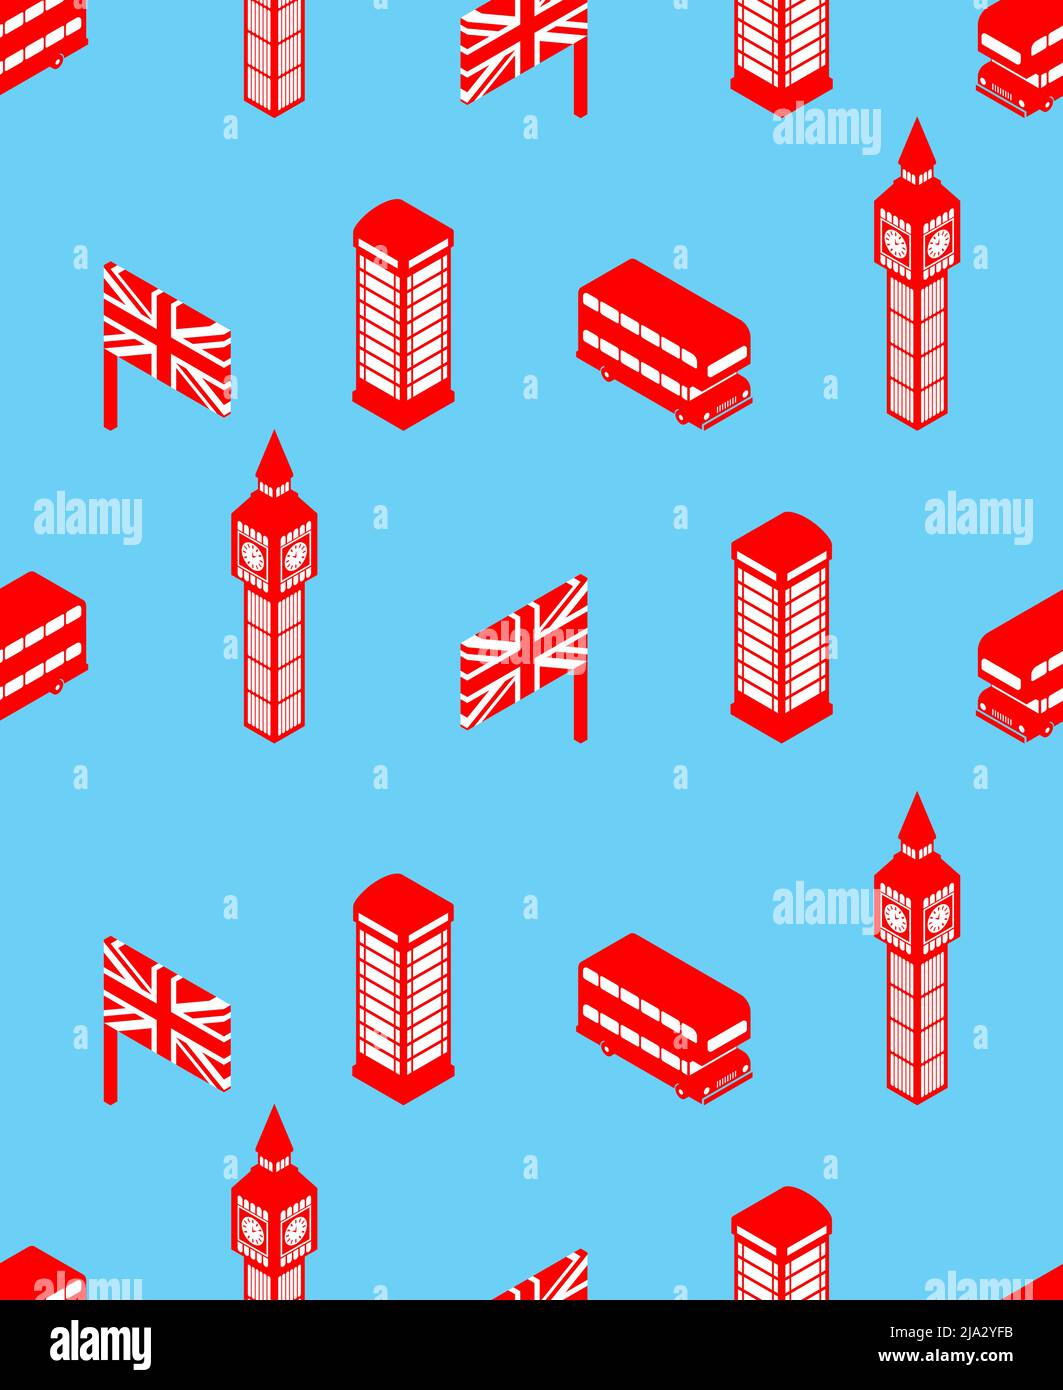 Nahtlos im Londoner Muster. Hintergrund Großbritannien. Wahrzeichen von London Set Icon. Roter Doppeldecker und Telefonzelle. Britische Flagge und Big Ben Turm Stock Vektor